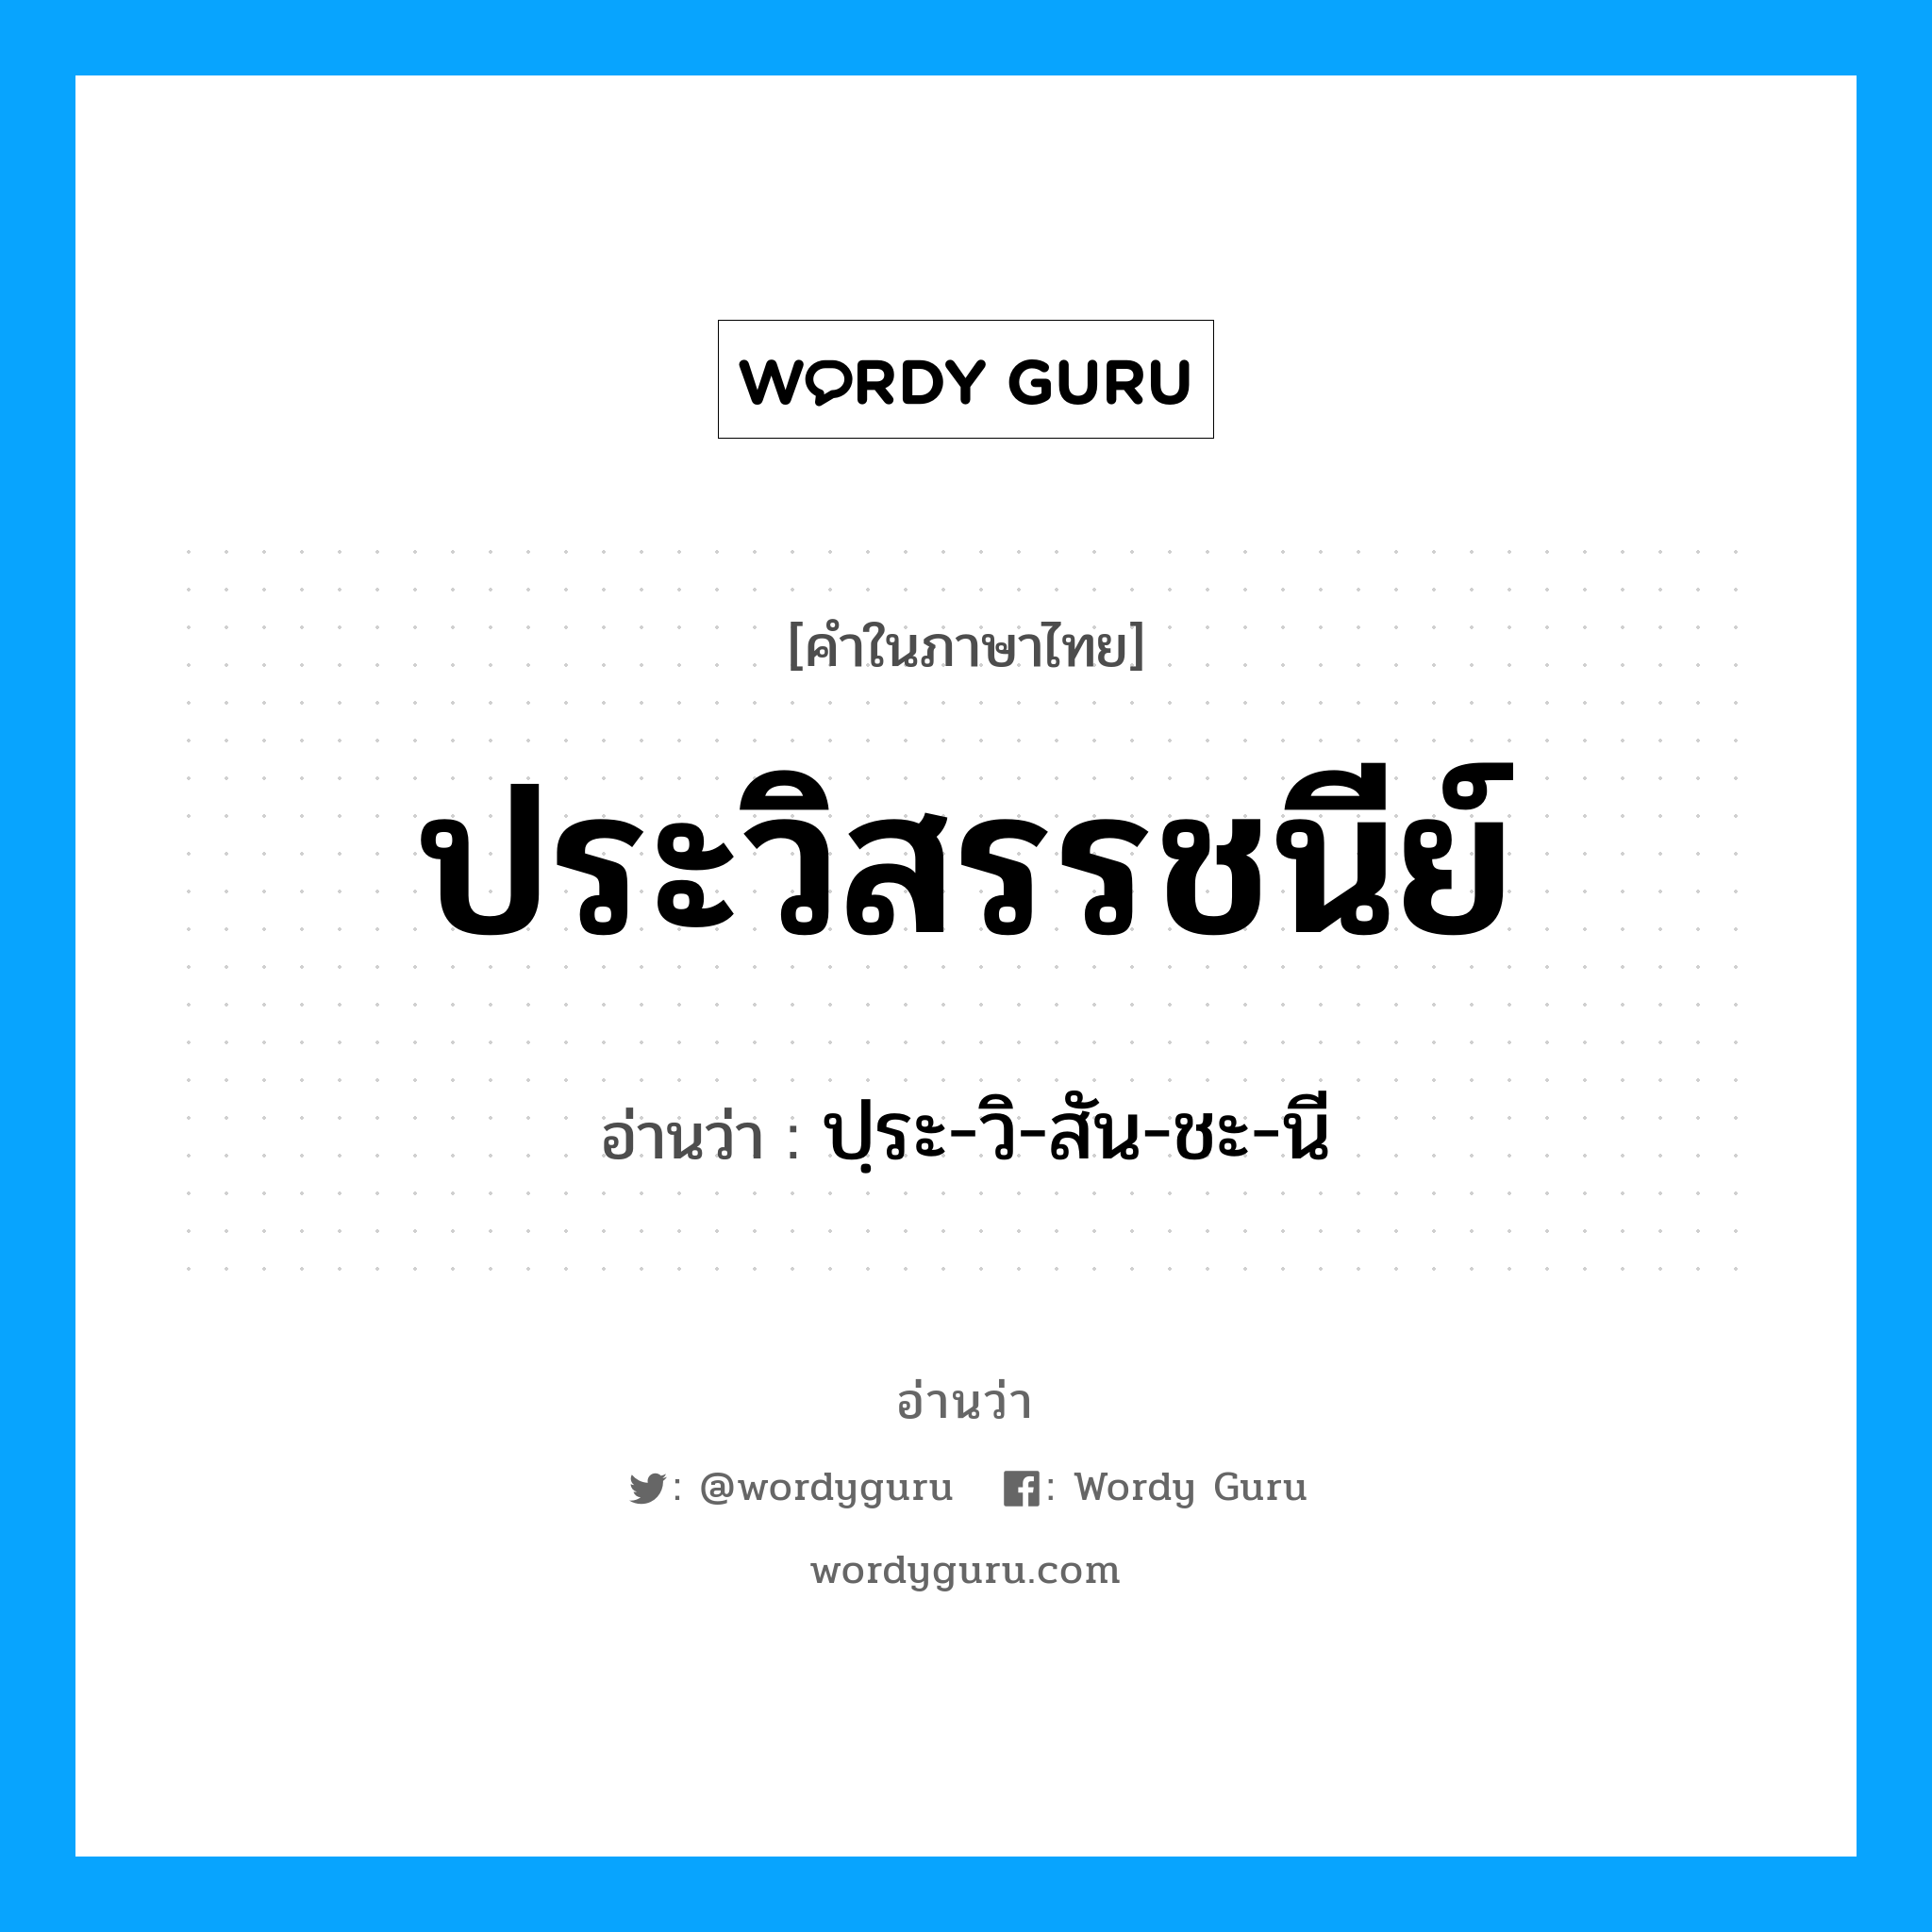 ปฺระ-วิ-สัน-ชะ-นี เป็นคำอ่านของคำไหน?, คำในภาษาไทย ปฺระ-วิ-สัน-ชะ-นี อ่านว่า ประวิสรรชนีย์